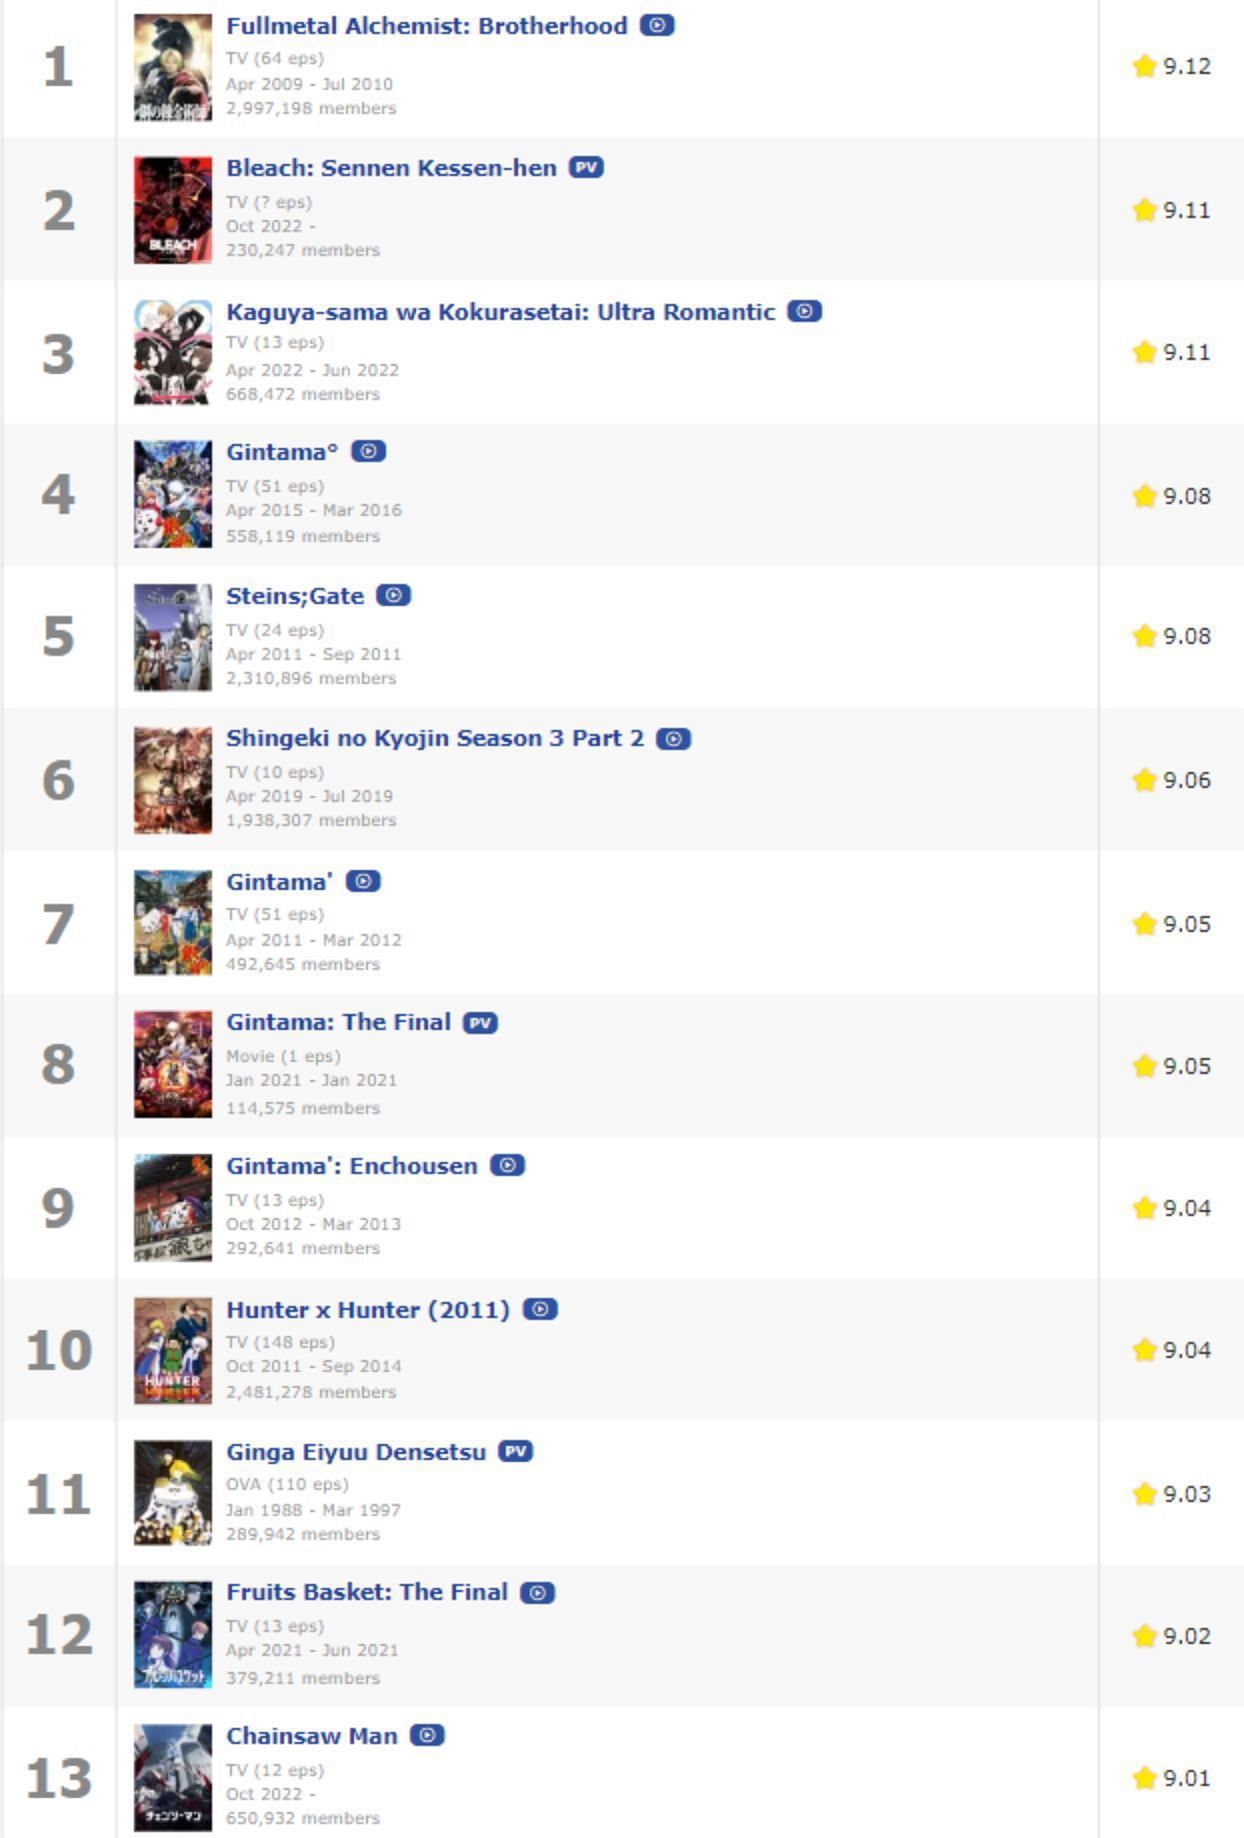 Fullmetal Alchemist: Brotherhood regains No. 1 spot on MyAnimeList